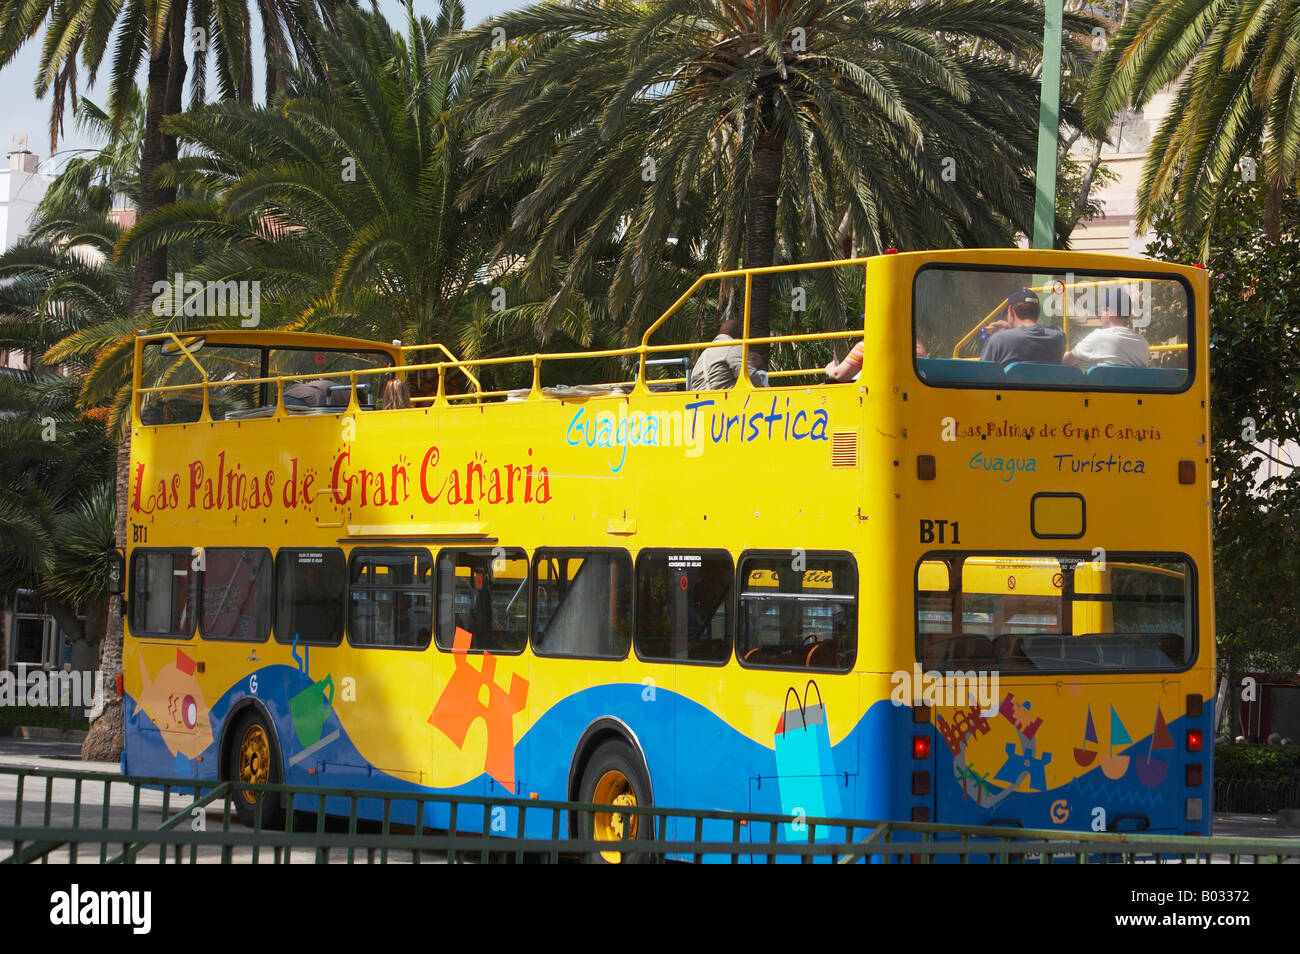 Tourist Bus, Las Palmas, Gran Canaria Stock Photo - Alamy